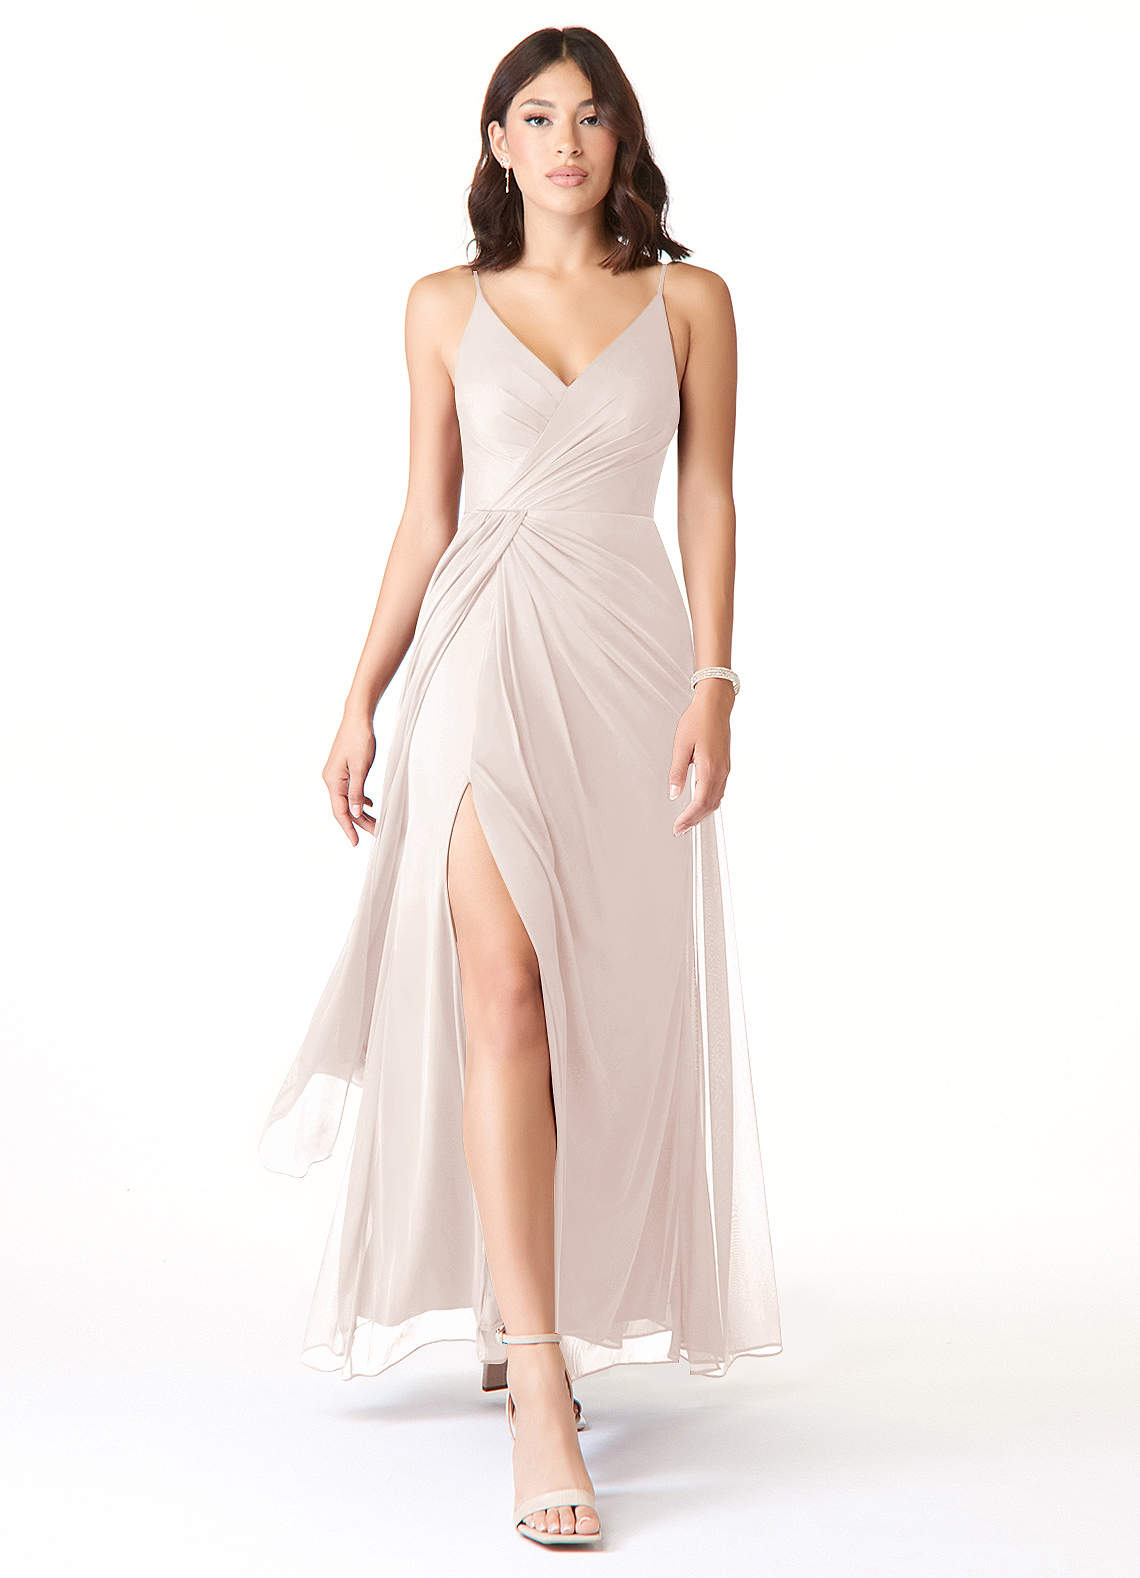 Azazie Evalin Bridesmaid Dresses A-Line V-Neck Pleated Mesh Floor-Length Dress image1